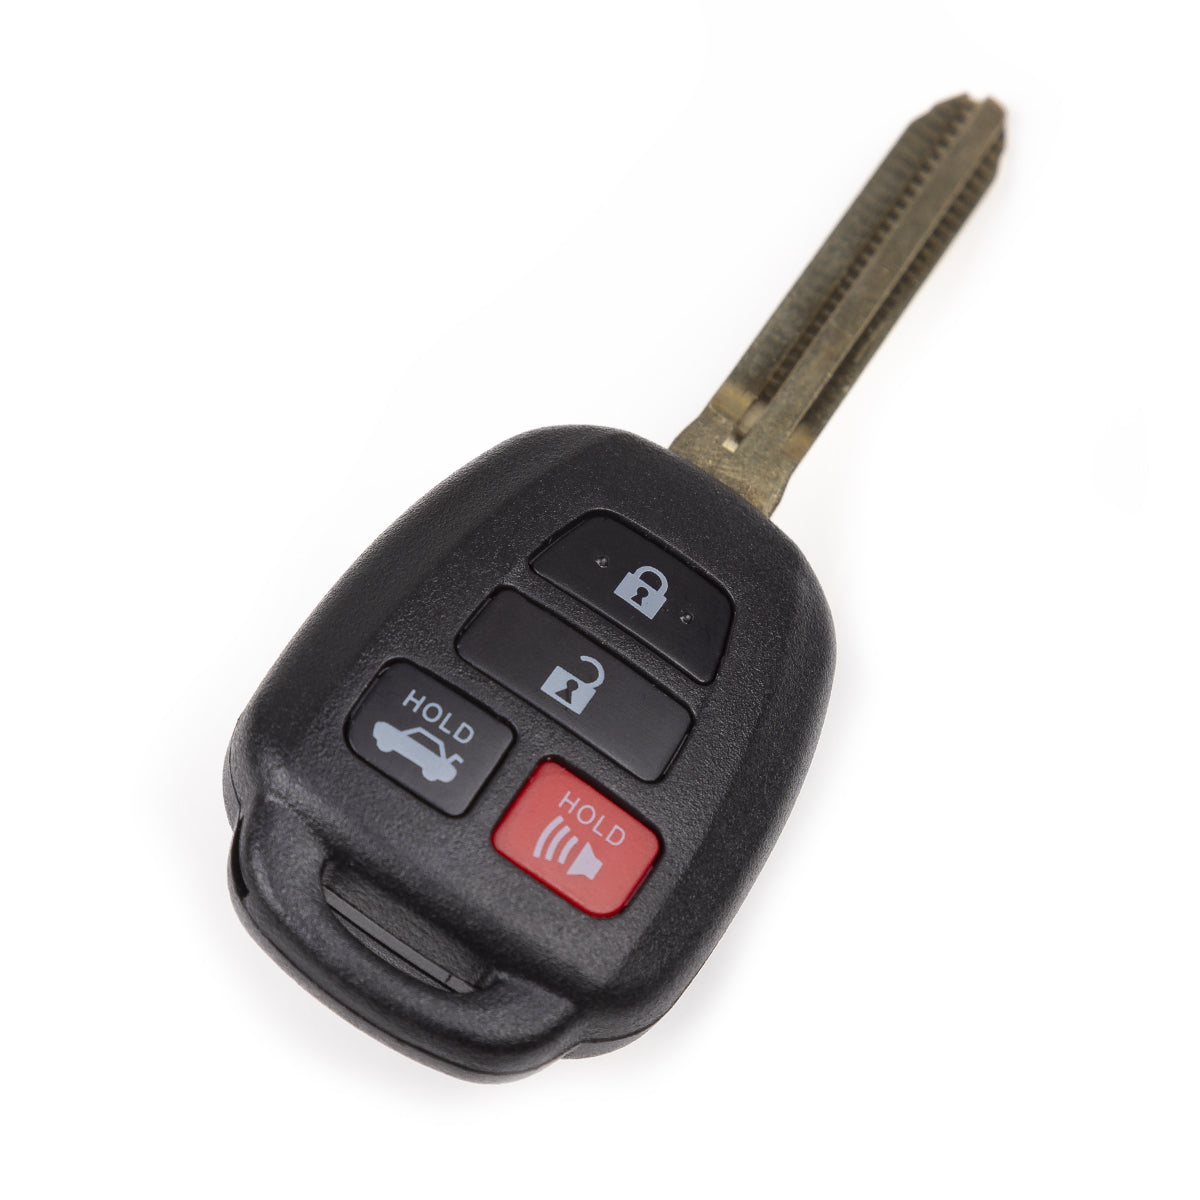 2012 2013 2014 Toyota Camry Key Fob 4B FCC# HYQ12BDM/ G Chip